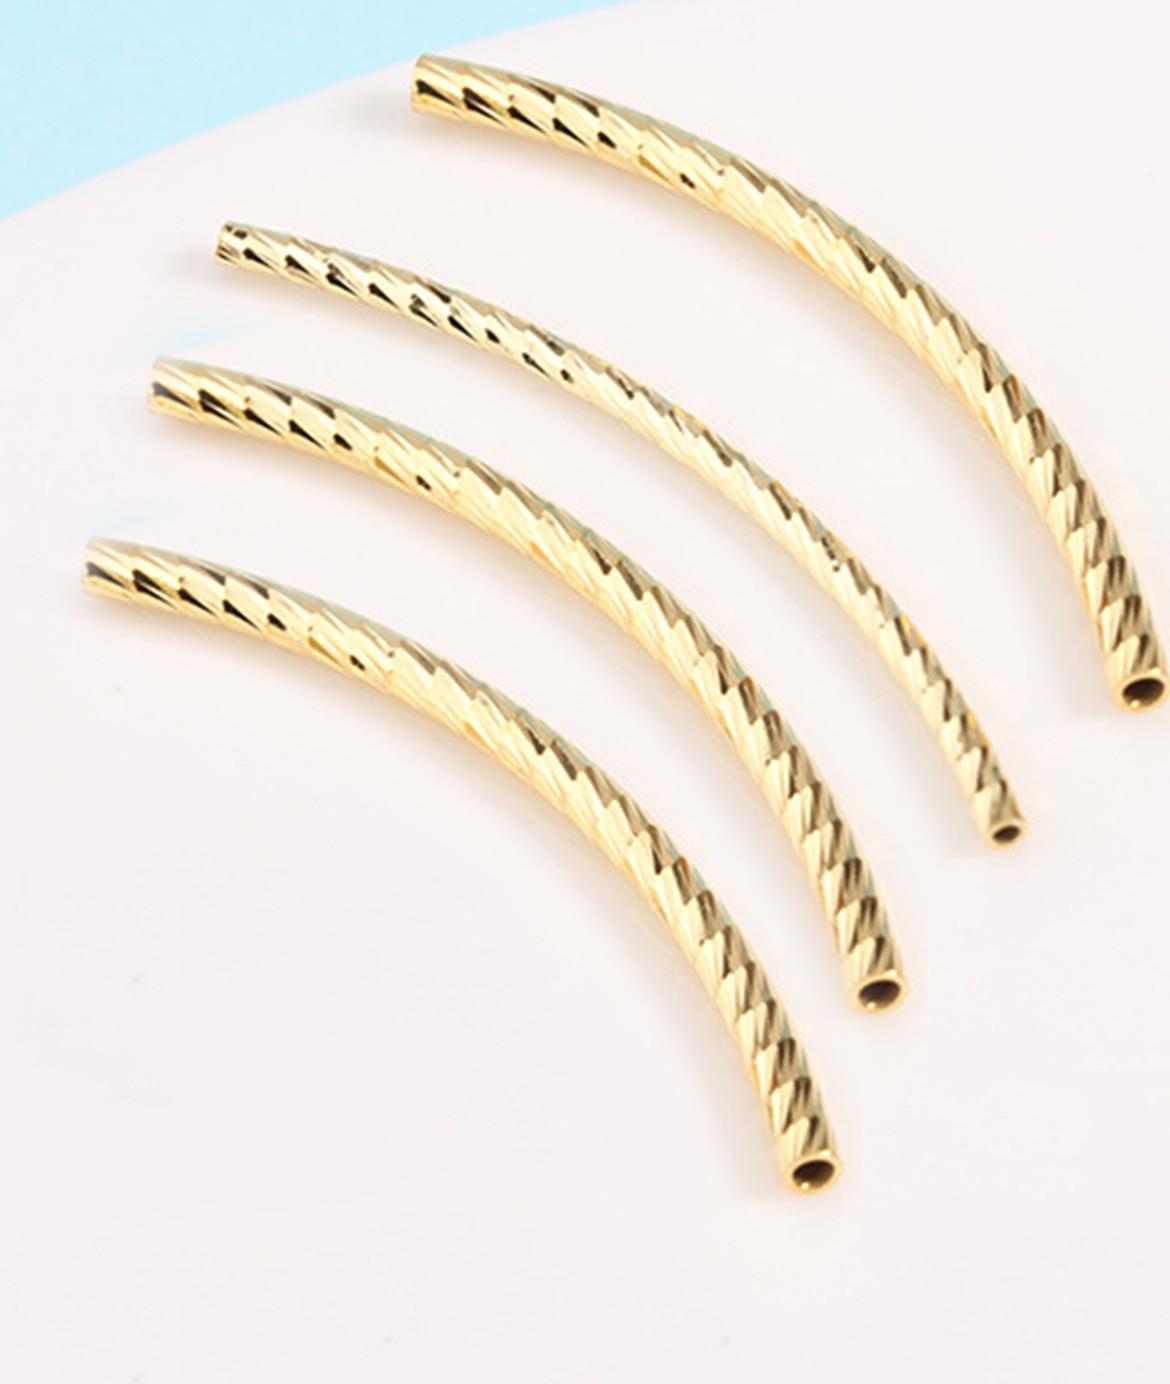 Hình ảnh Combo 4 cái charm bạc hình ống họa tiết xoắn mạ vàng - Ngọc Quý Gemstones